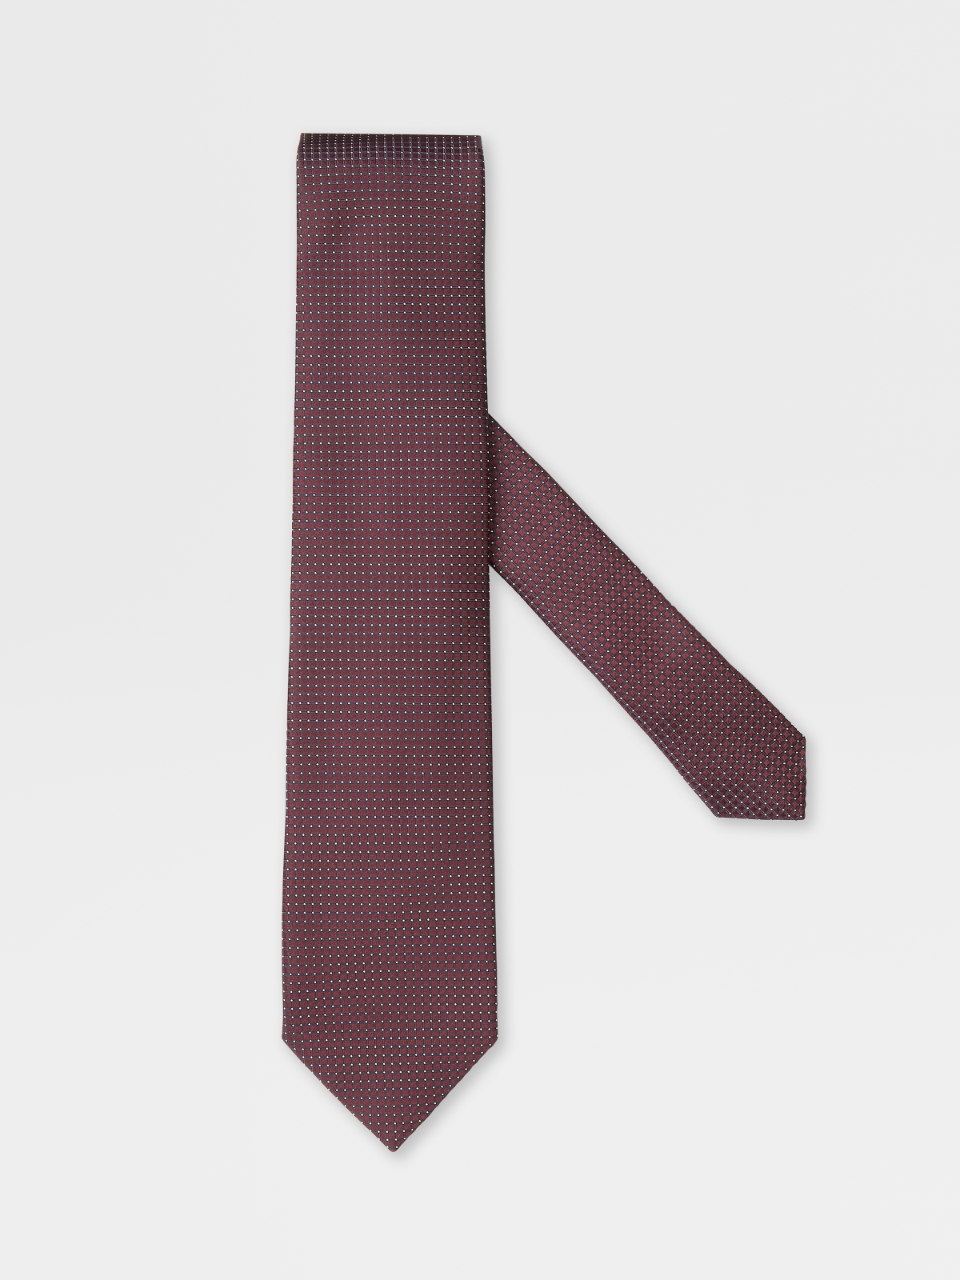 砖红色桑蚕丝领带